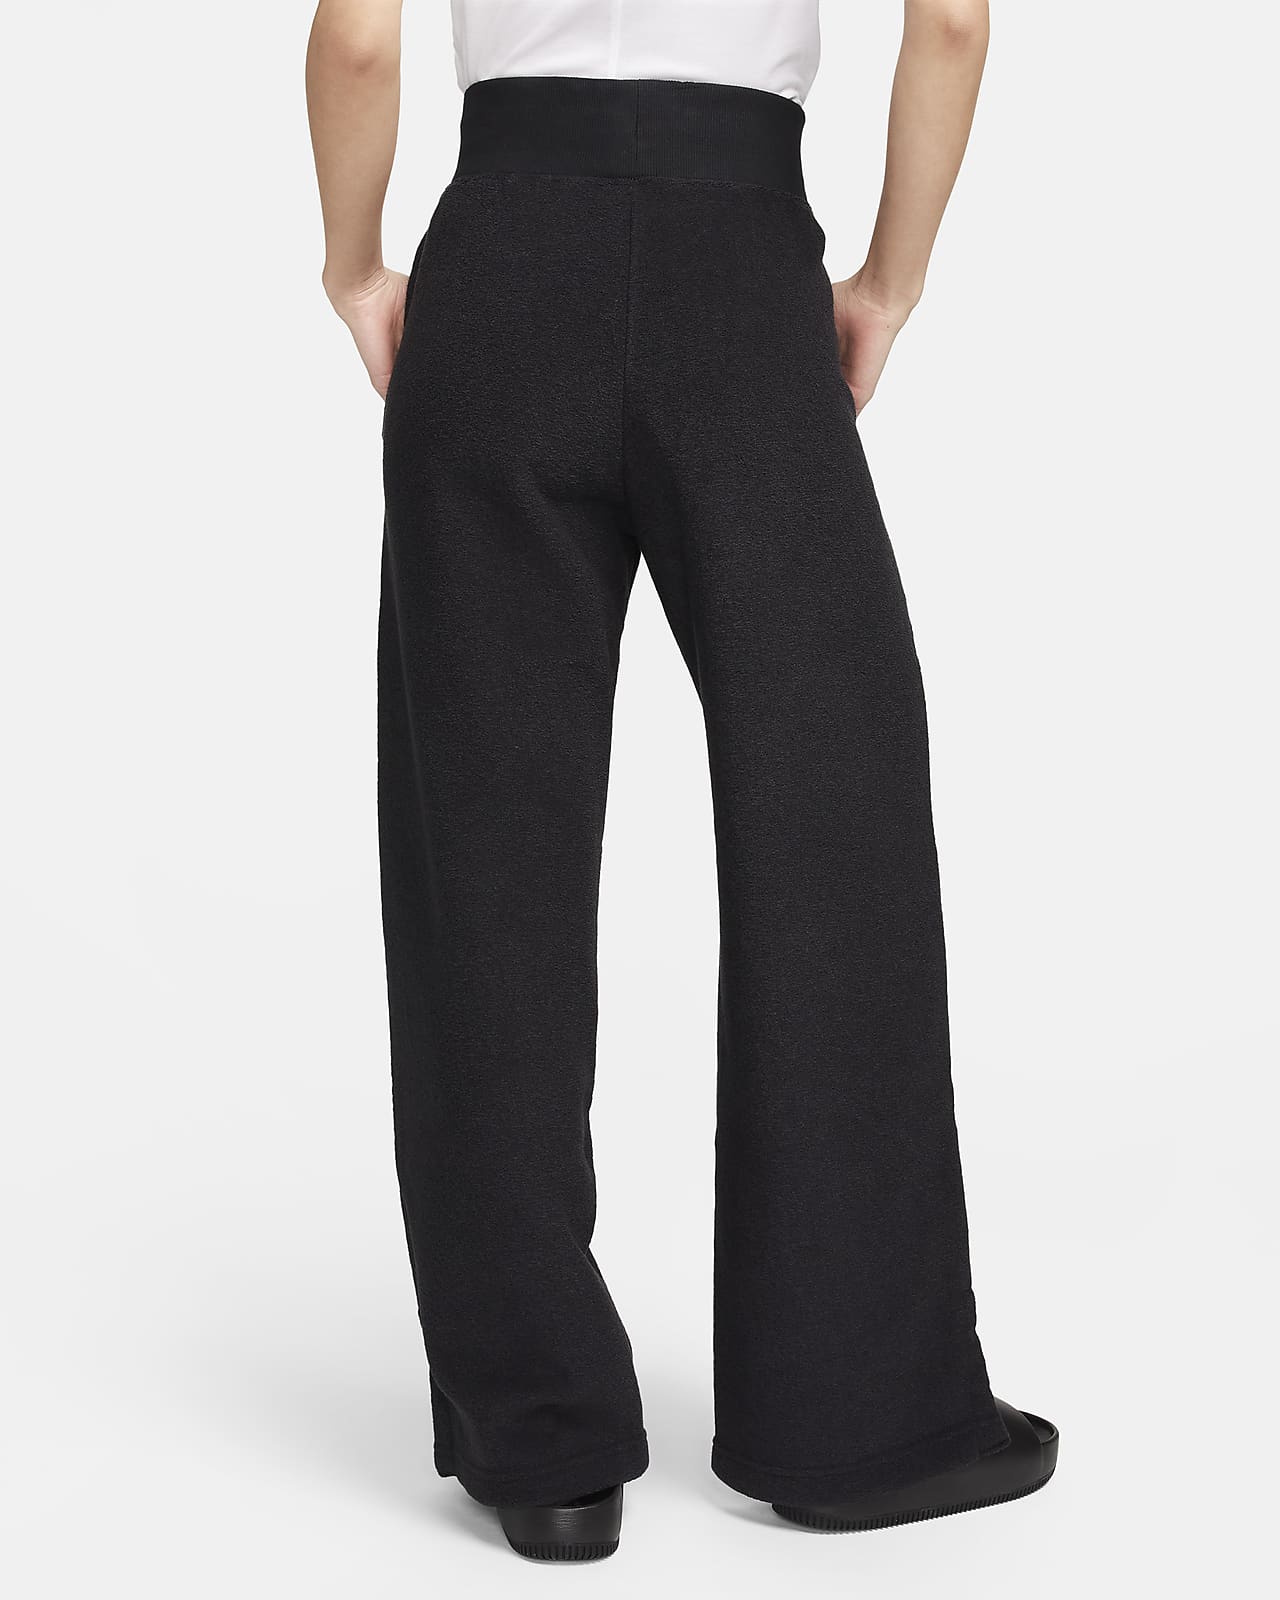 Nike Sportswear Phoenix Women's Wide Leg Fleece Pants Rosa DQ5615-611